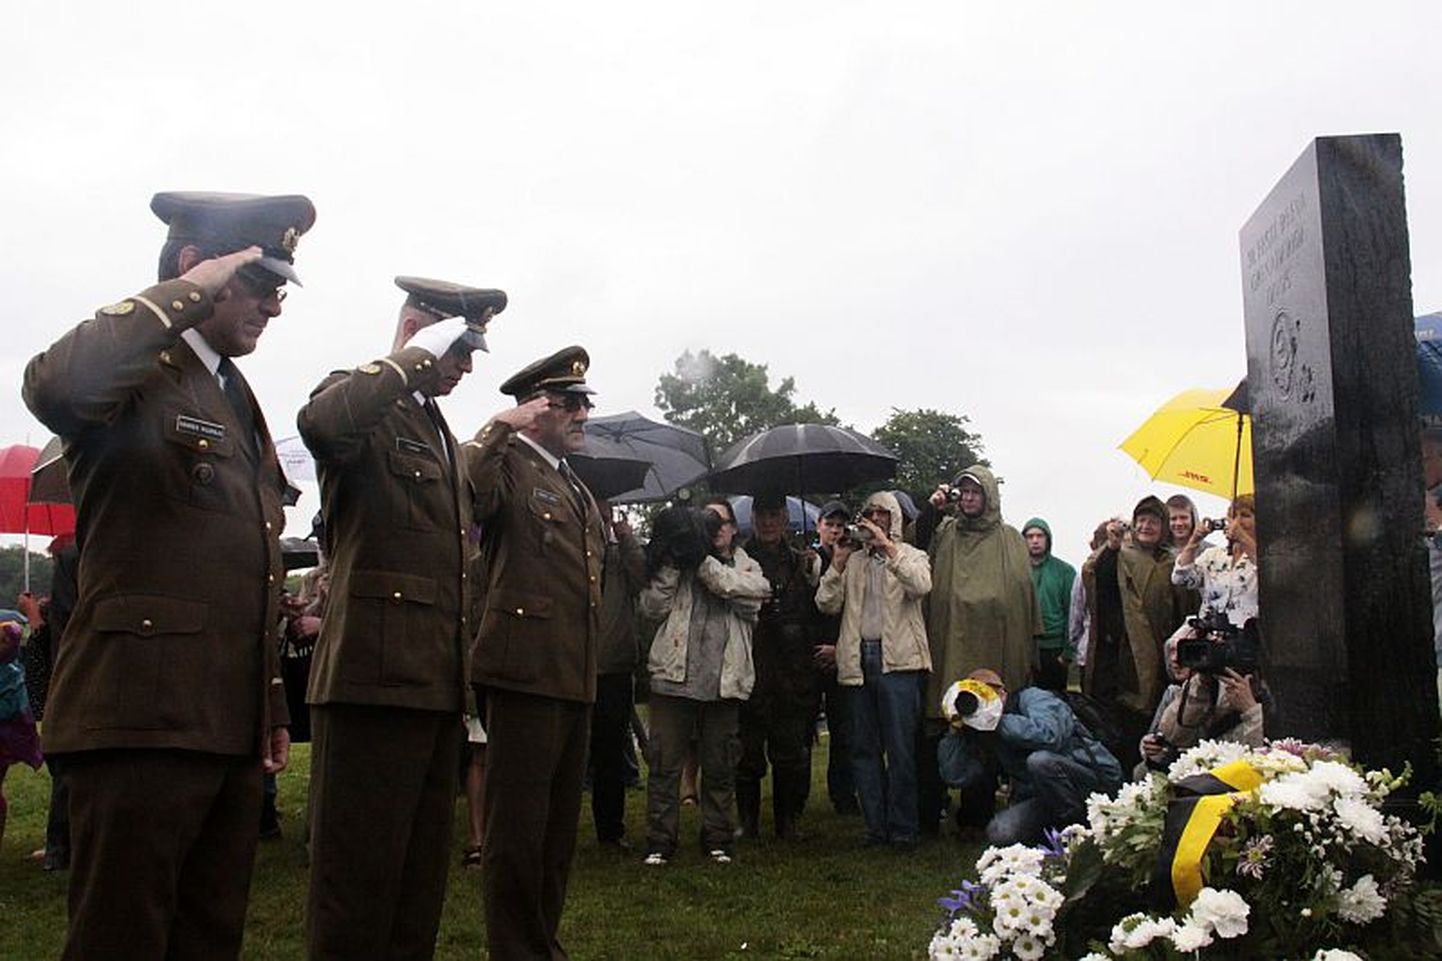 «Наши ценности». Представители Кайтселийта отдают воинские почести солдатам отборных войск Гитлера